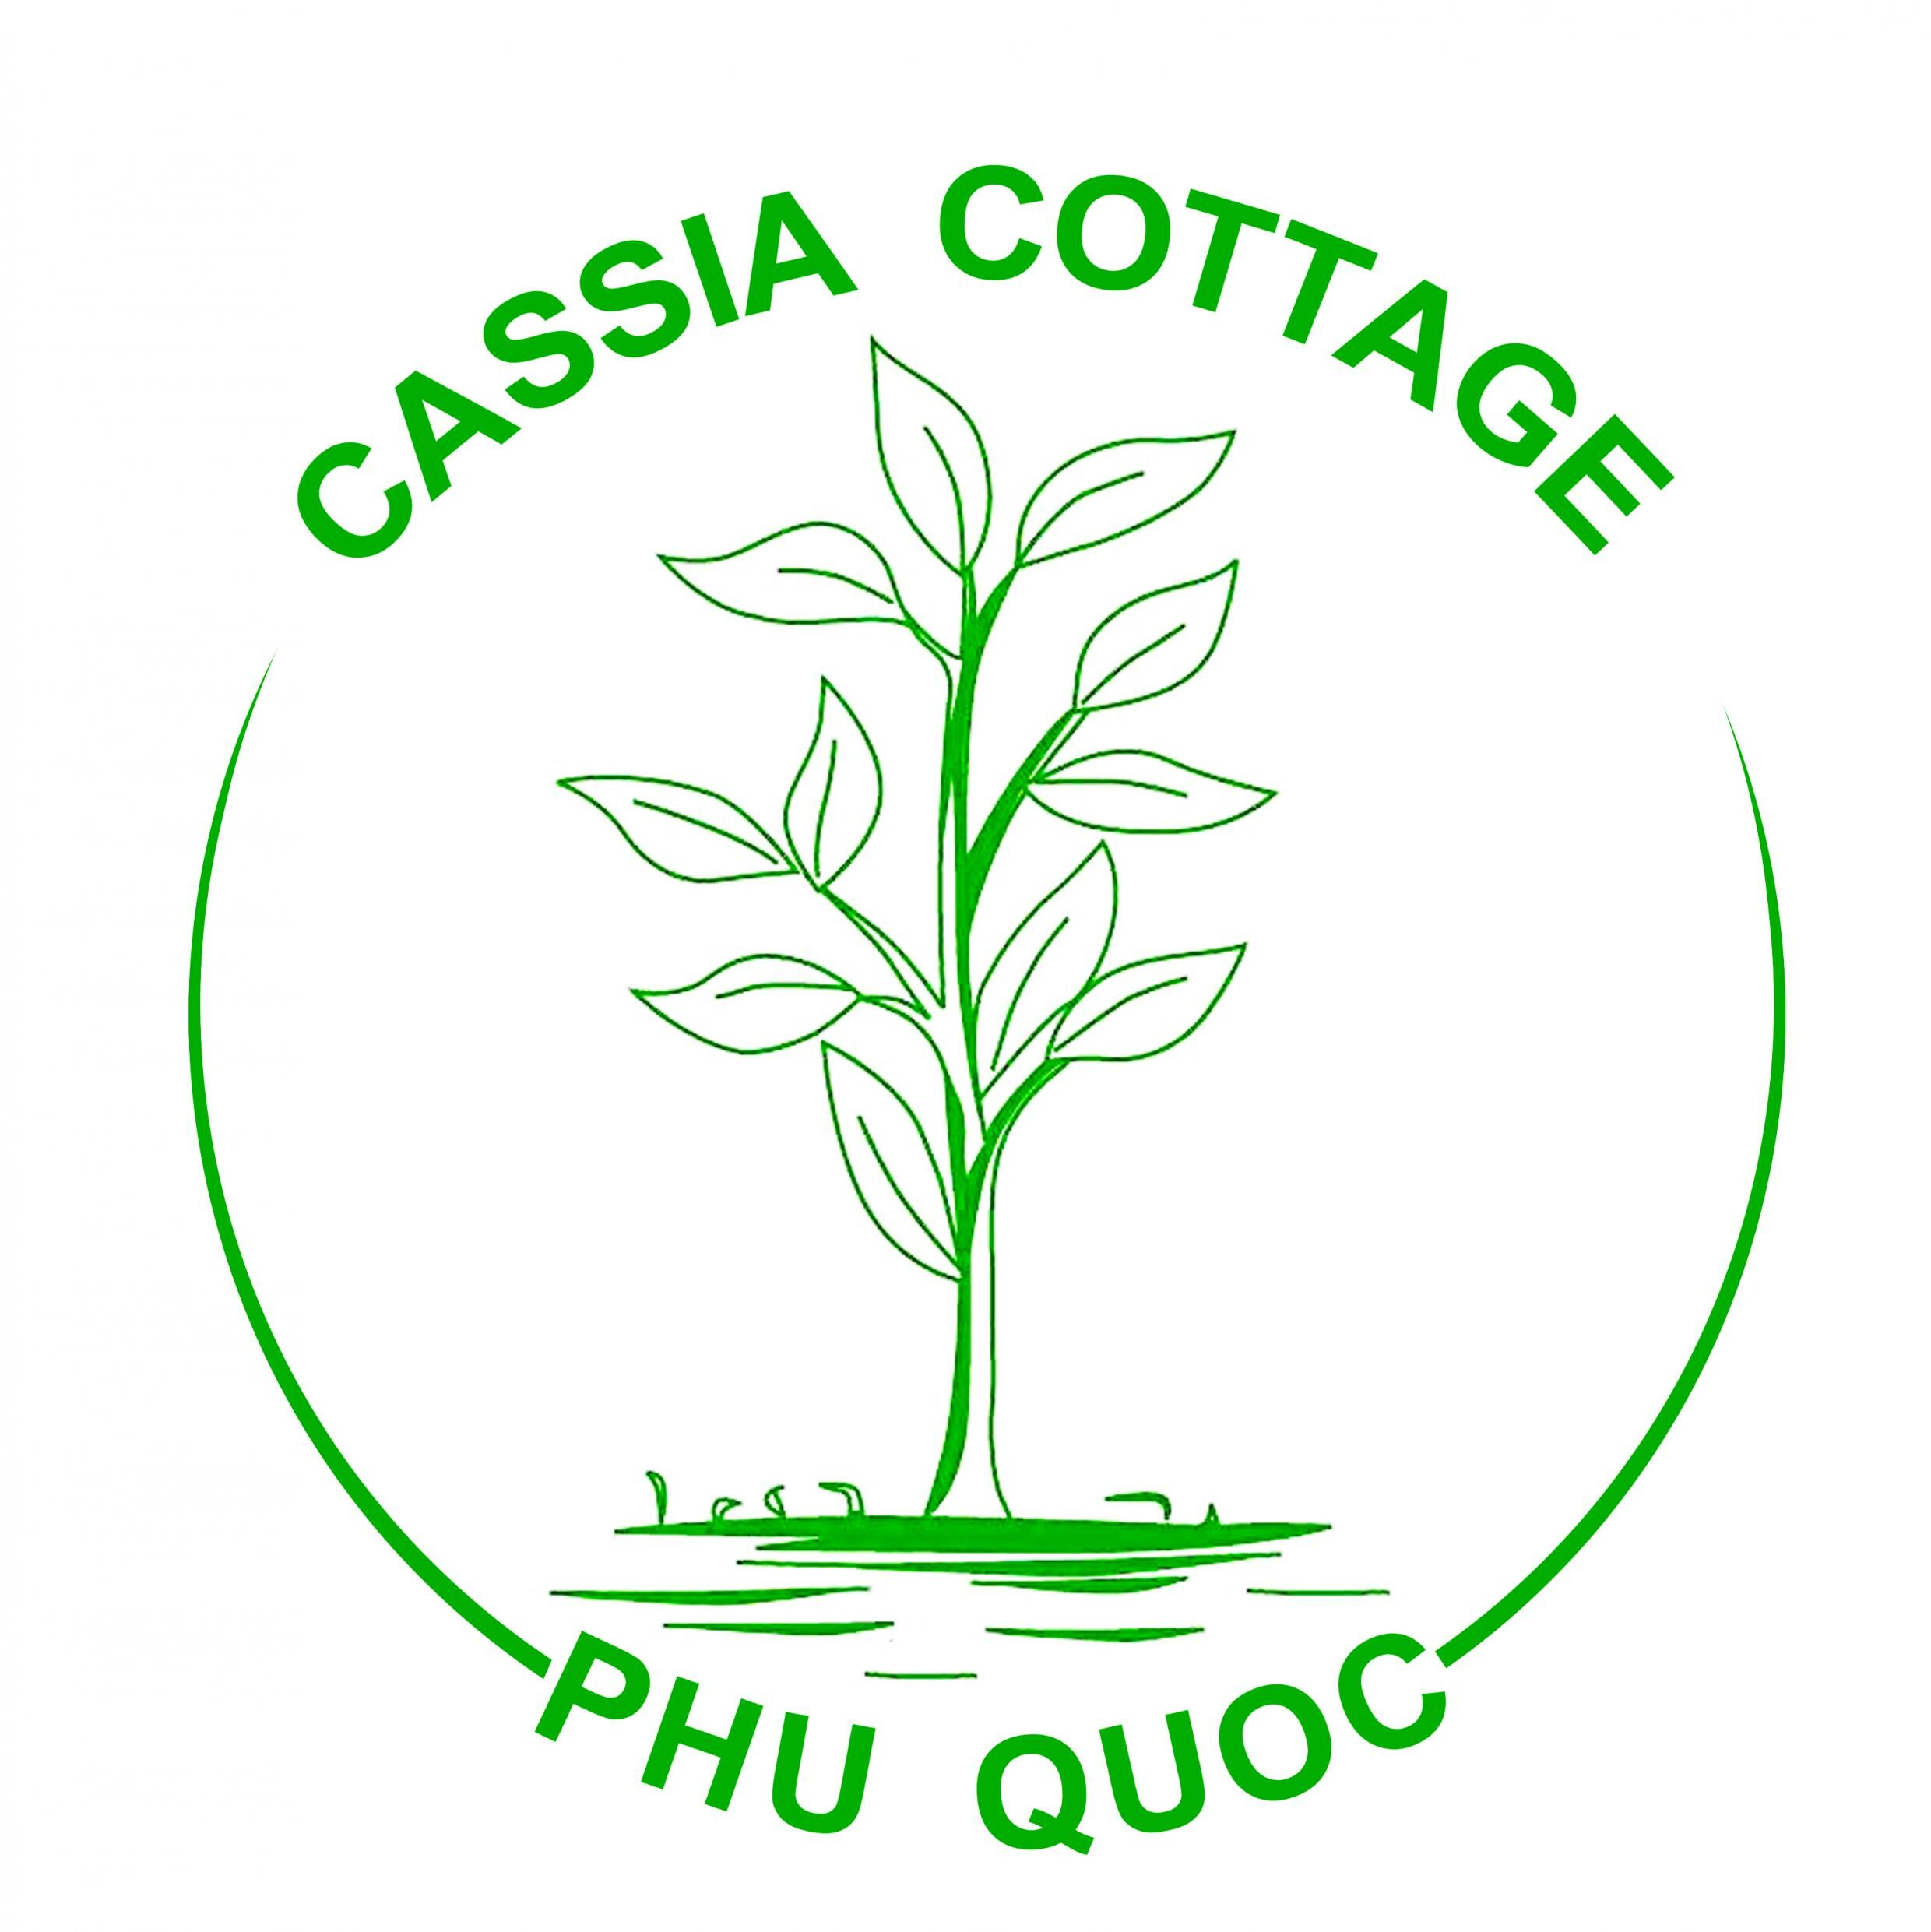 CÔNG TY CỔ PHẦN NHÀ TRANH - GIA VỊ (Cassia Cottage)